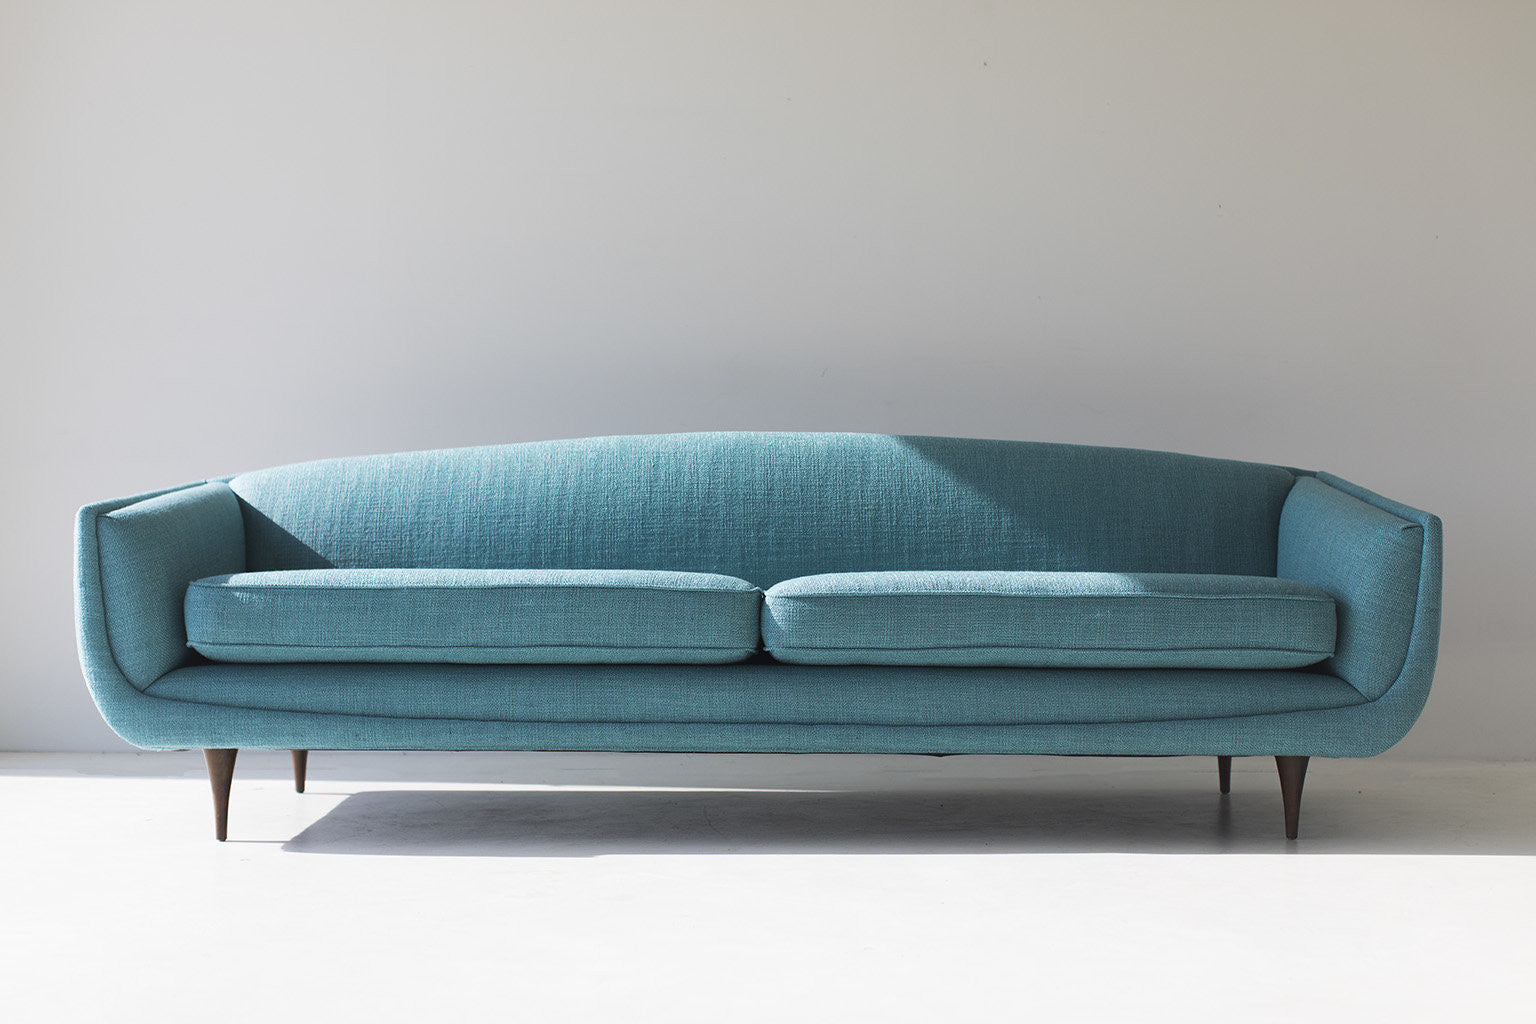 Selig-sofa-designer-attributed-William-Hinn-01